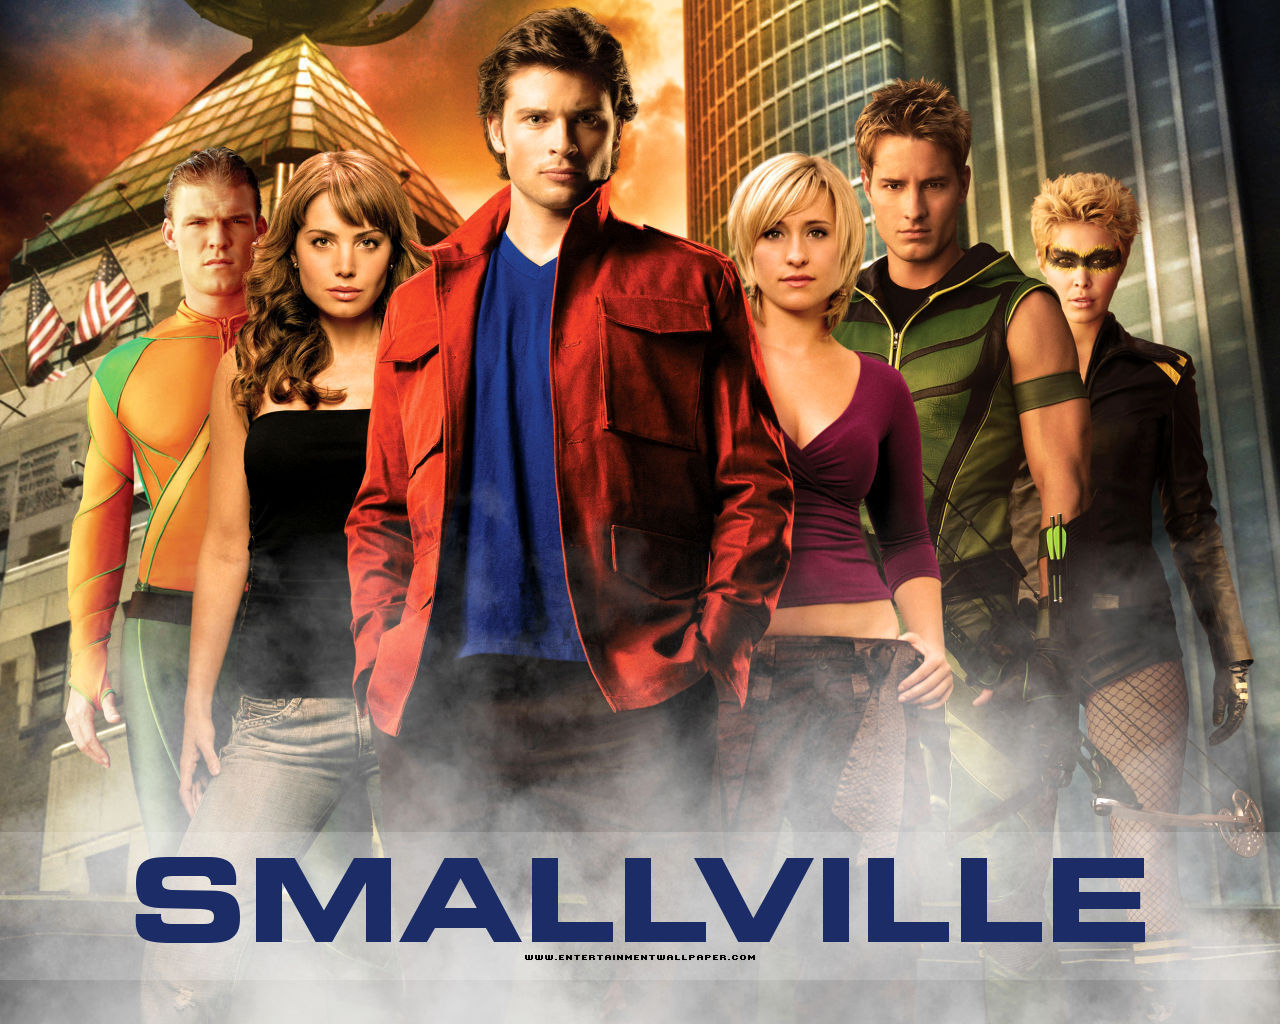 smallville tapete,film,poster,musical,fernsehprogramm,erfundener charakter